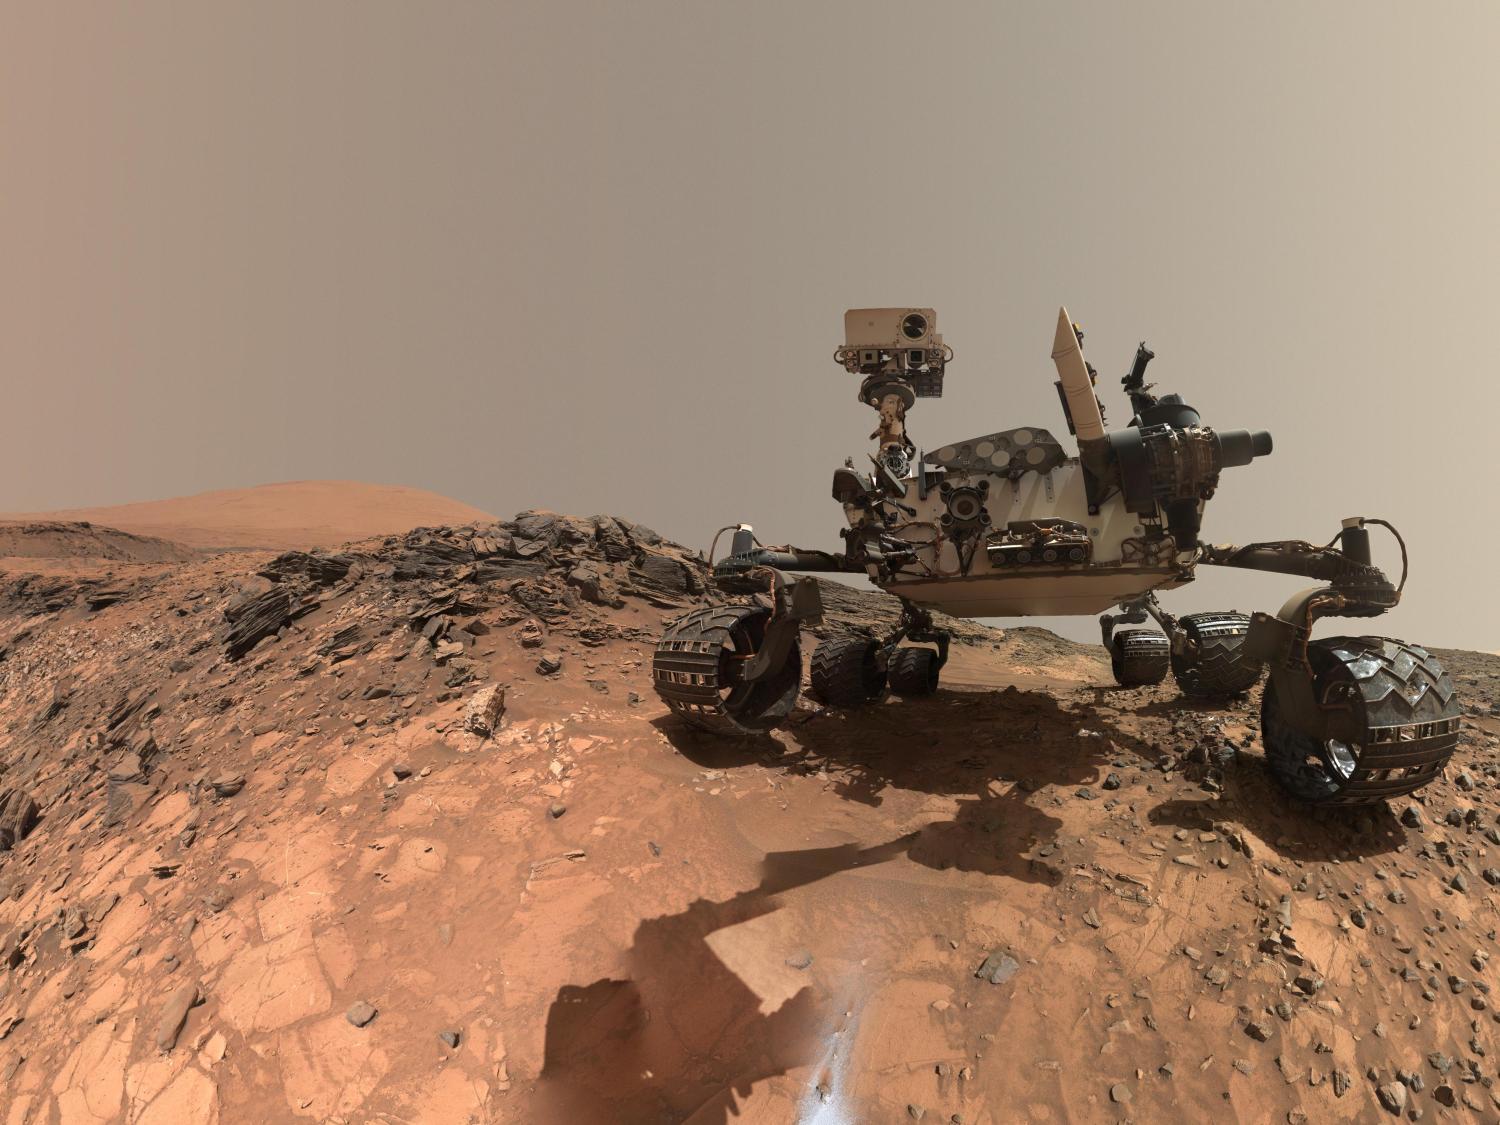 NASA tiếp tục tìm thấy dấu hiệu sự sống trên sao Hỏa